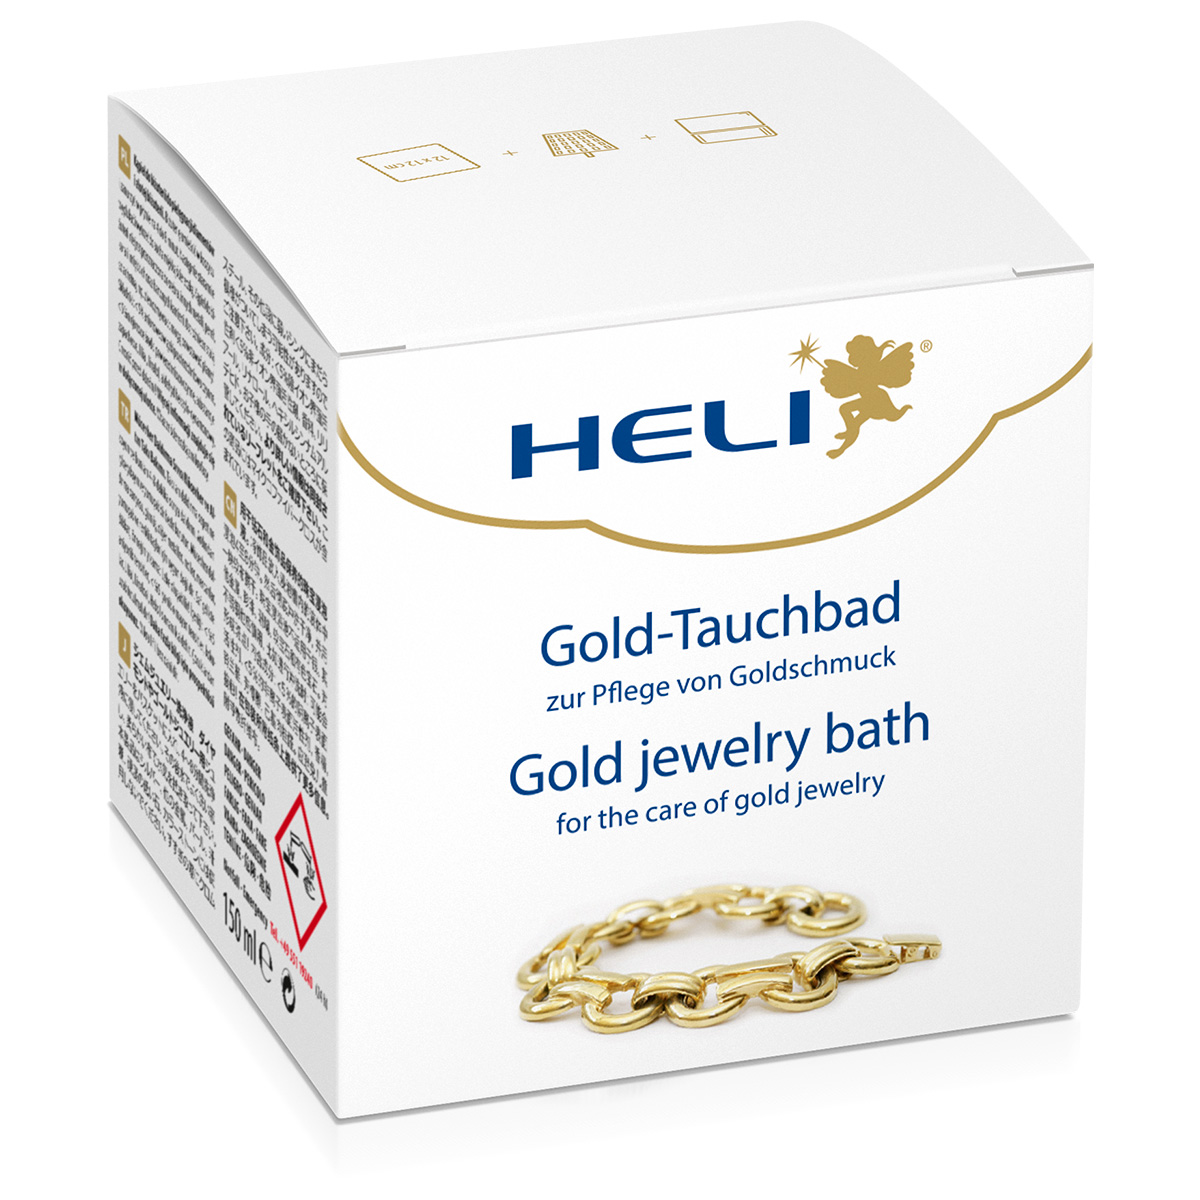 Heli bain de trempage pour l'or avec panier de lavage et chiffon d'entretien, emballage bijoutier, 150 ml